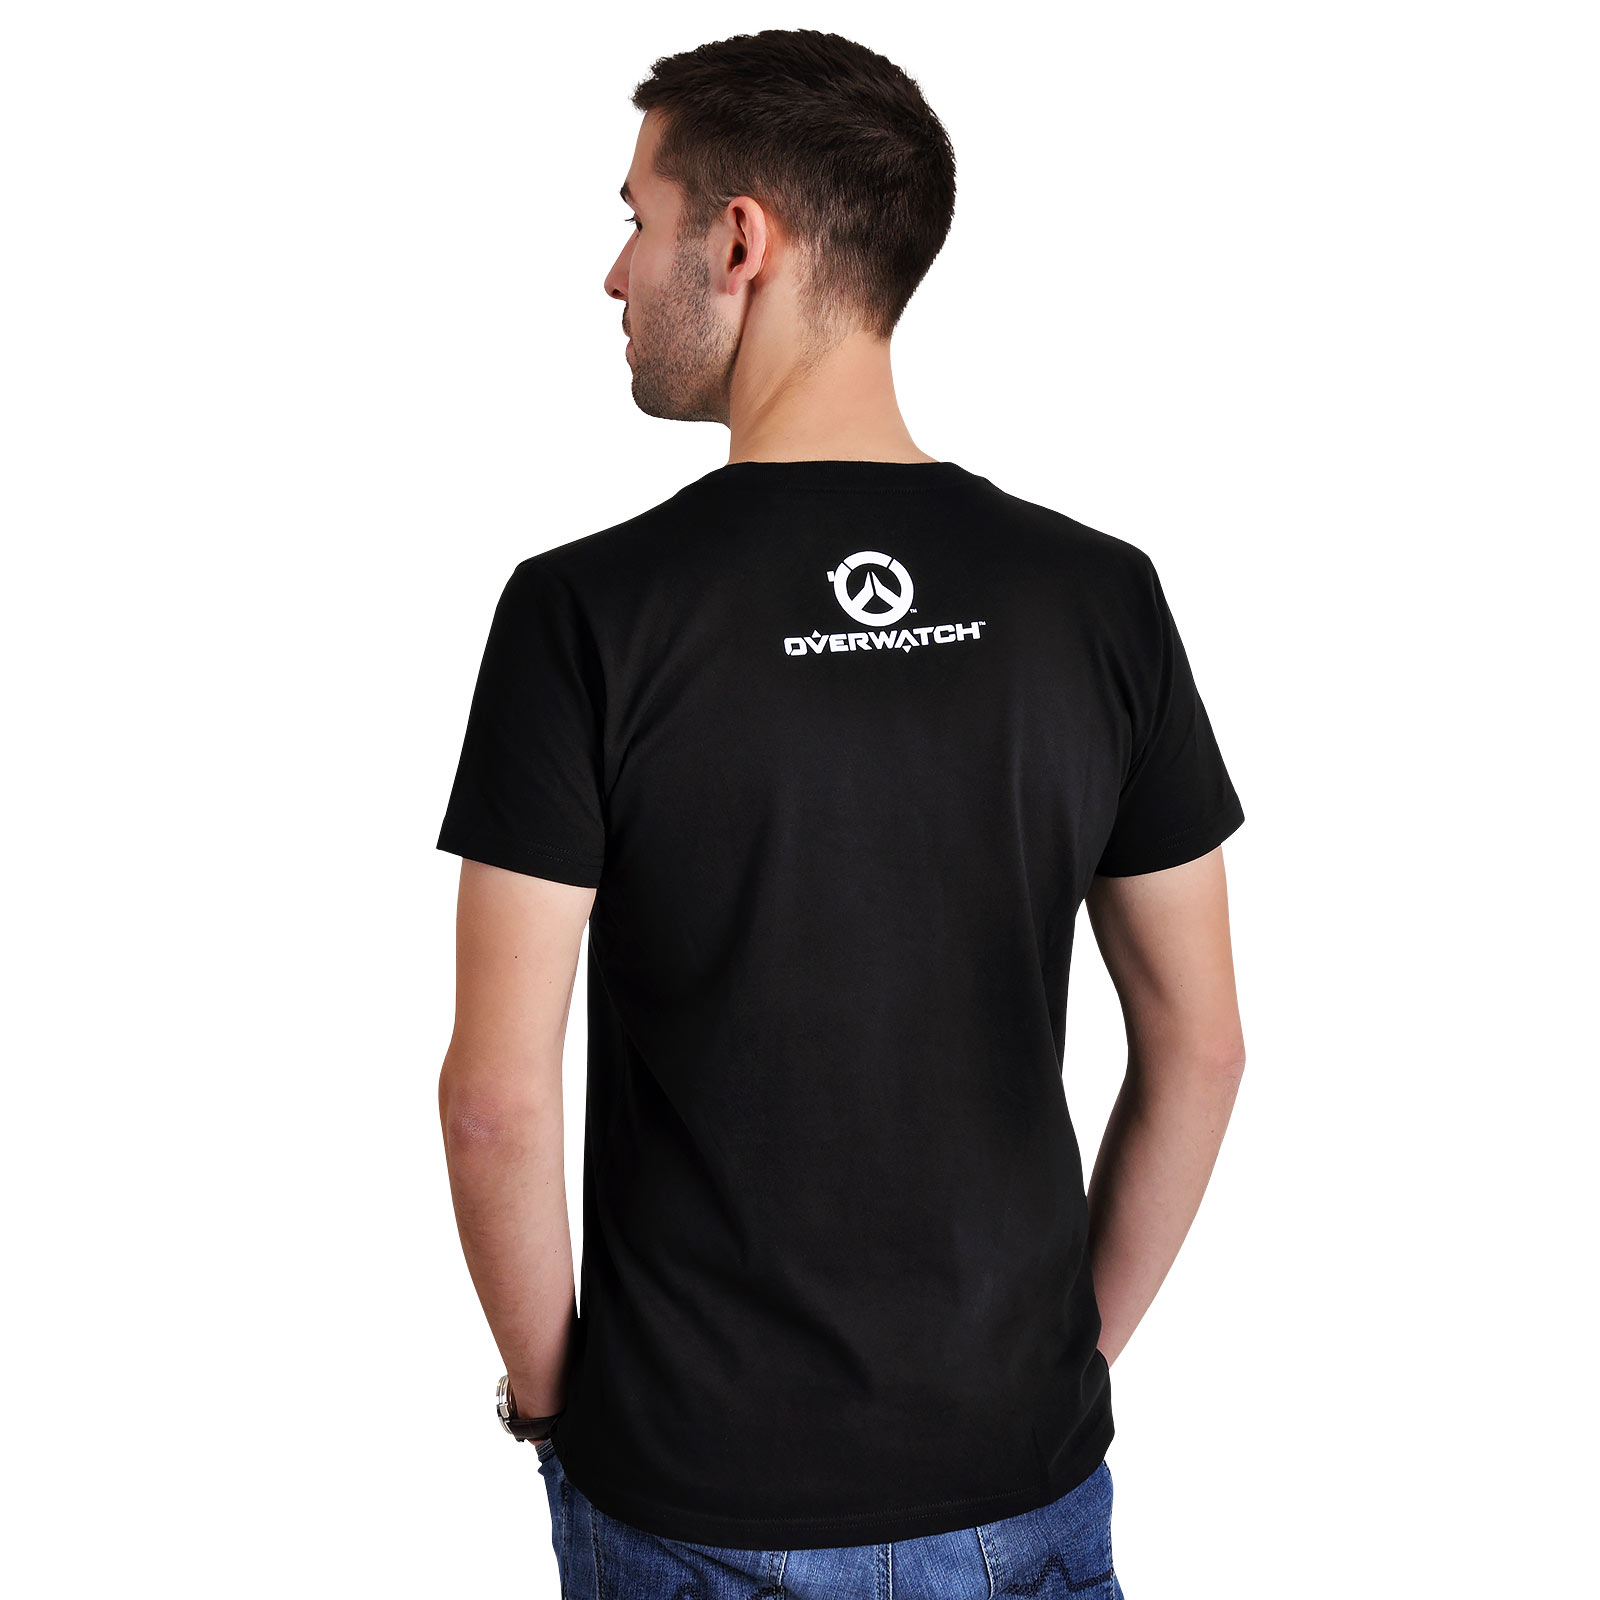 Overwatch - T-shirt noir avec logo Reaper Spray